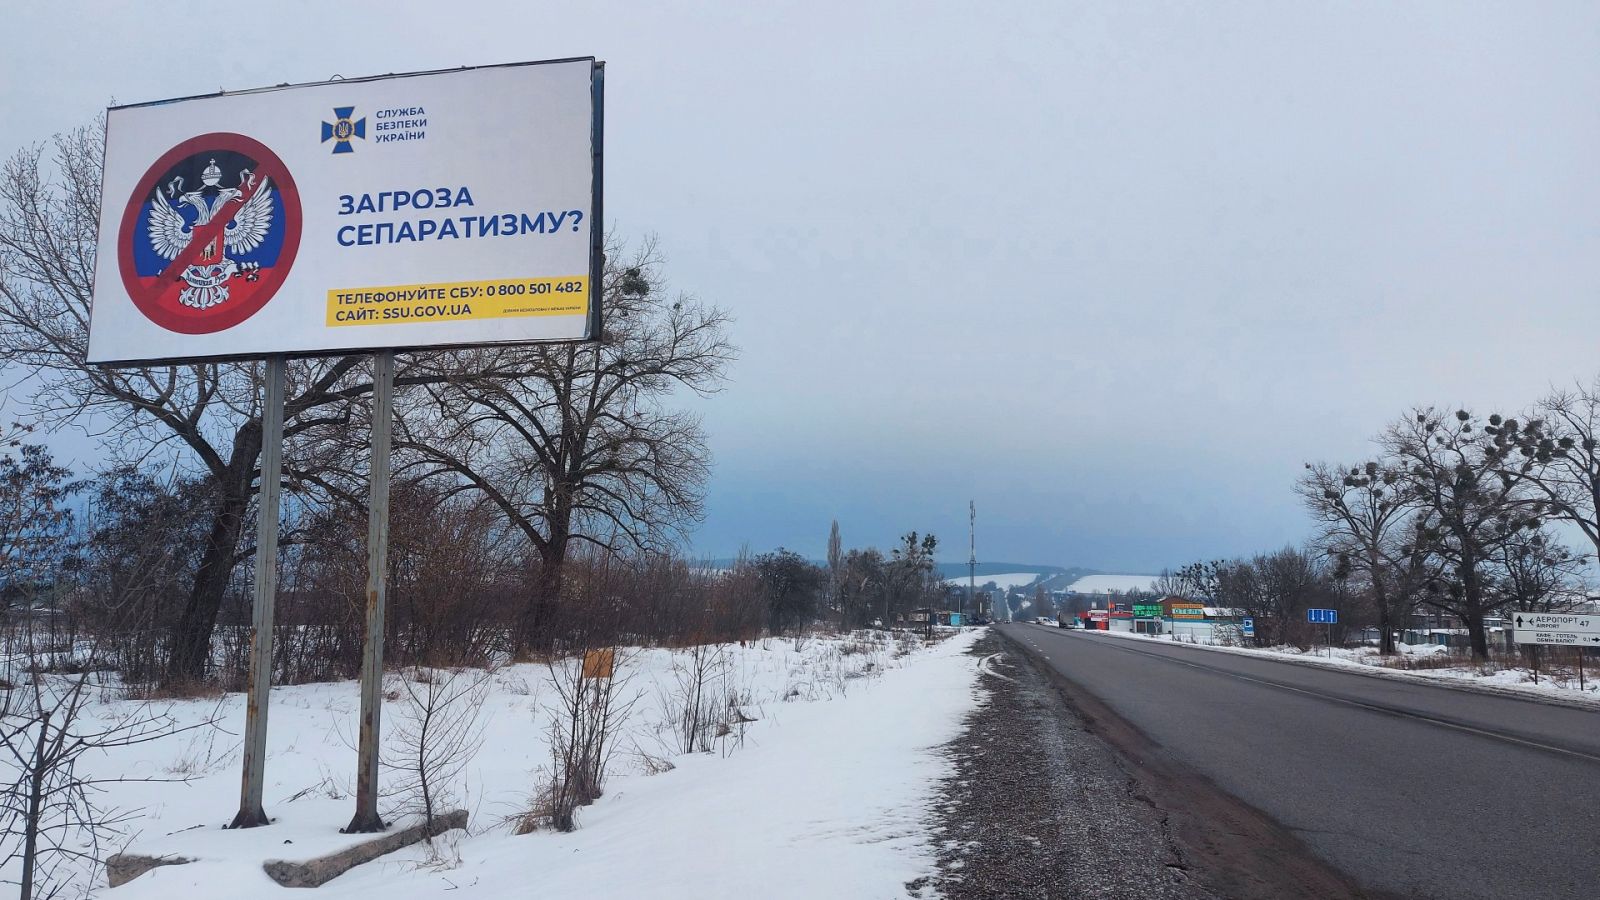 24 horas - Ucrania ve con escepticismo el anuncio de retirada de Rusia - Escuchar ahora